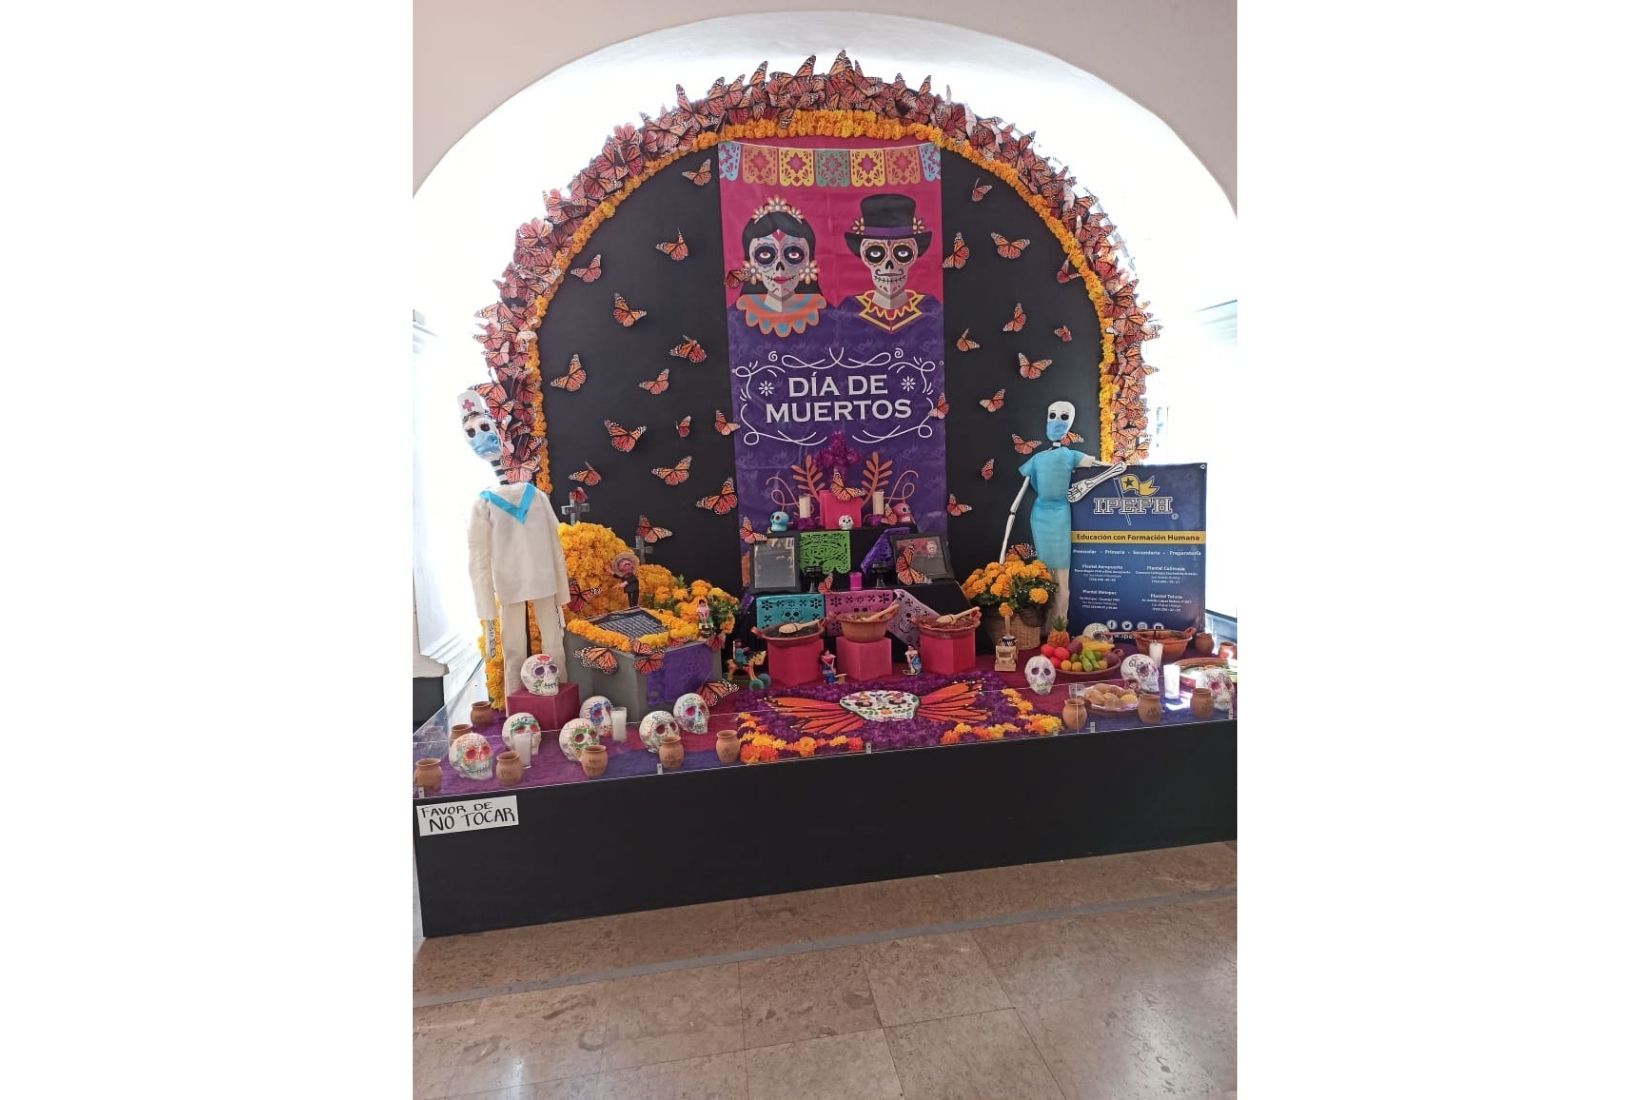 Altar de muertos con calaveras de alfeñique. Feria del Alfeñique. Toluca, EdoMex. (Foto: AmigosMAP).